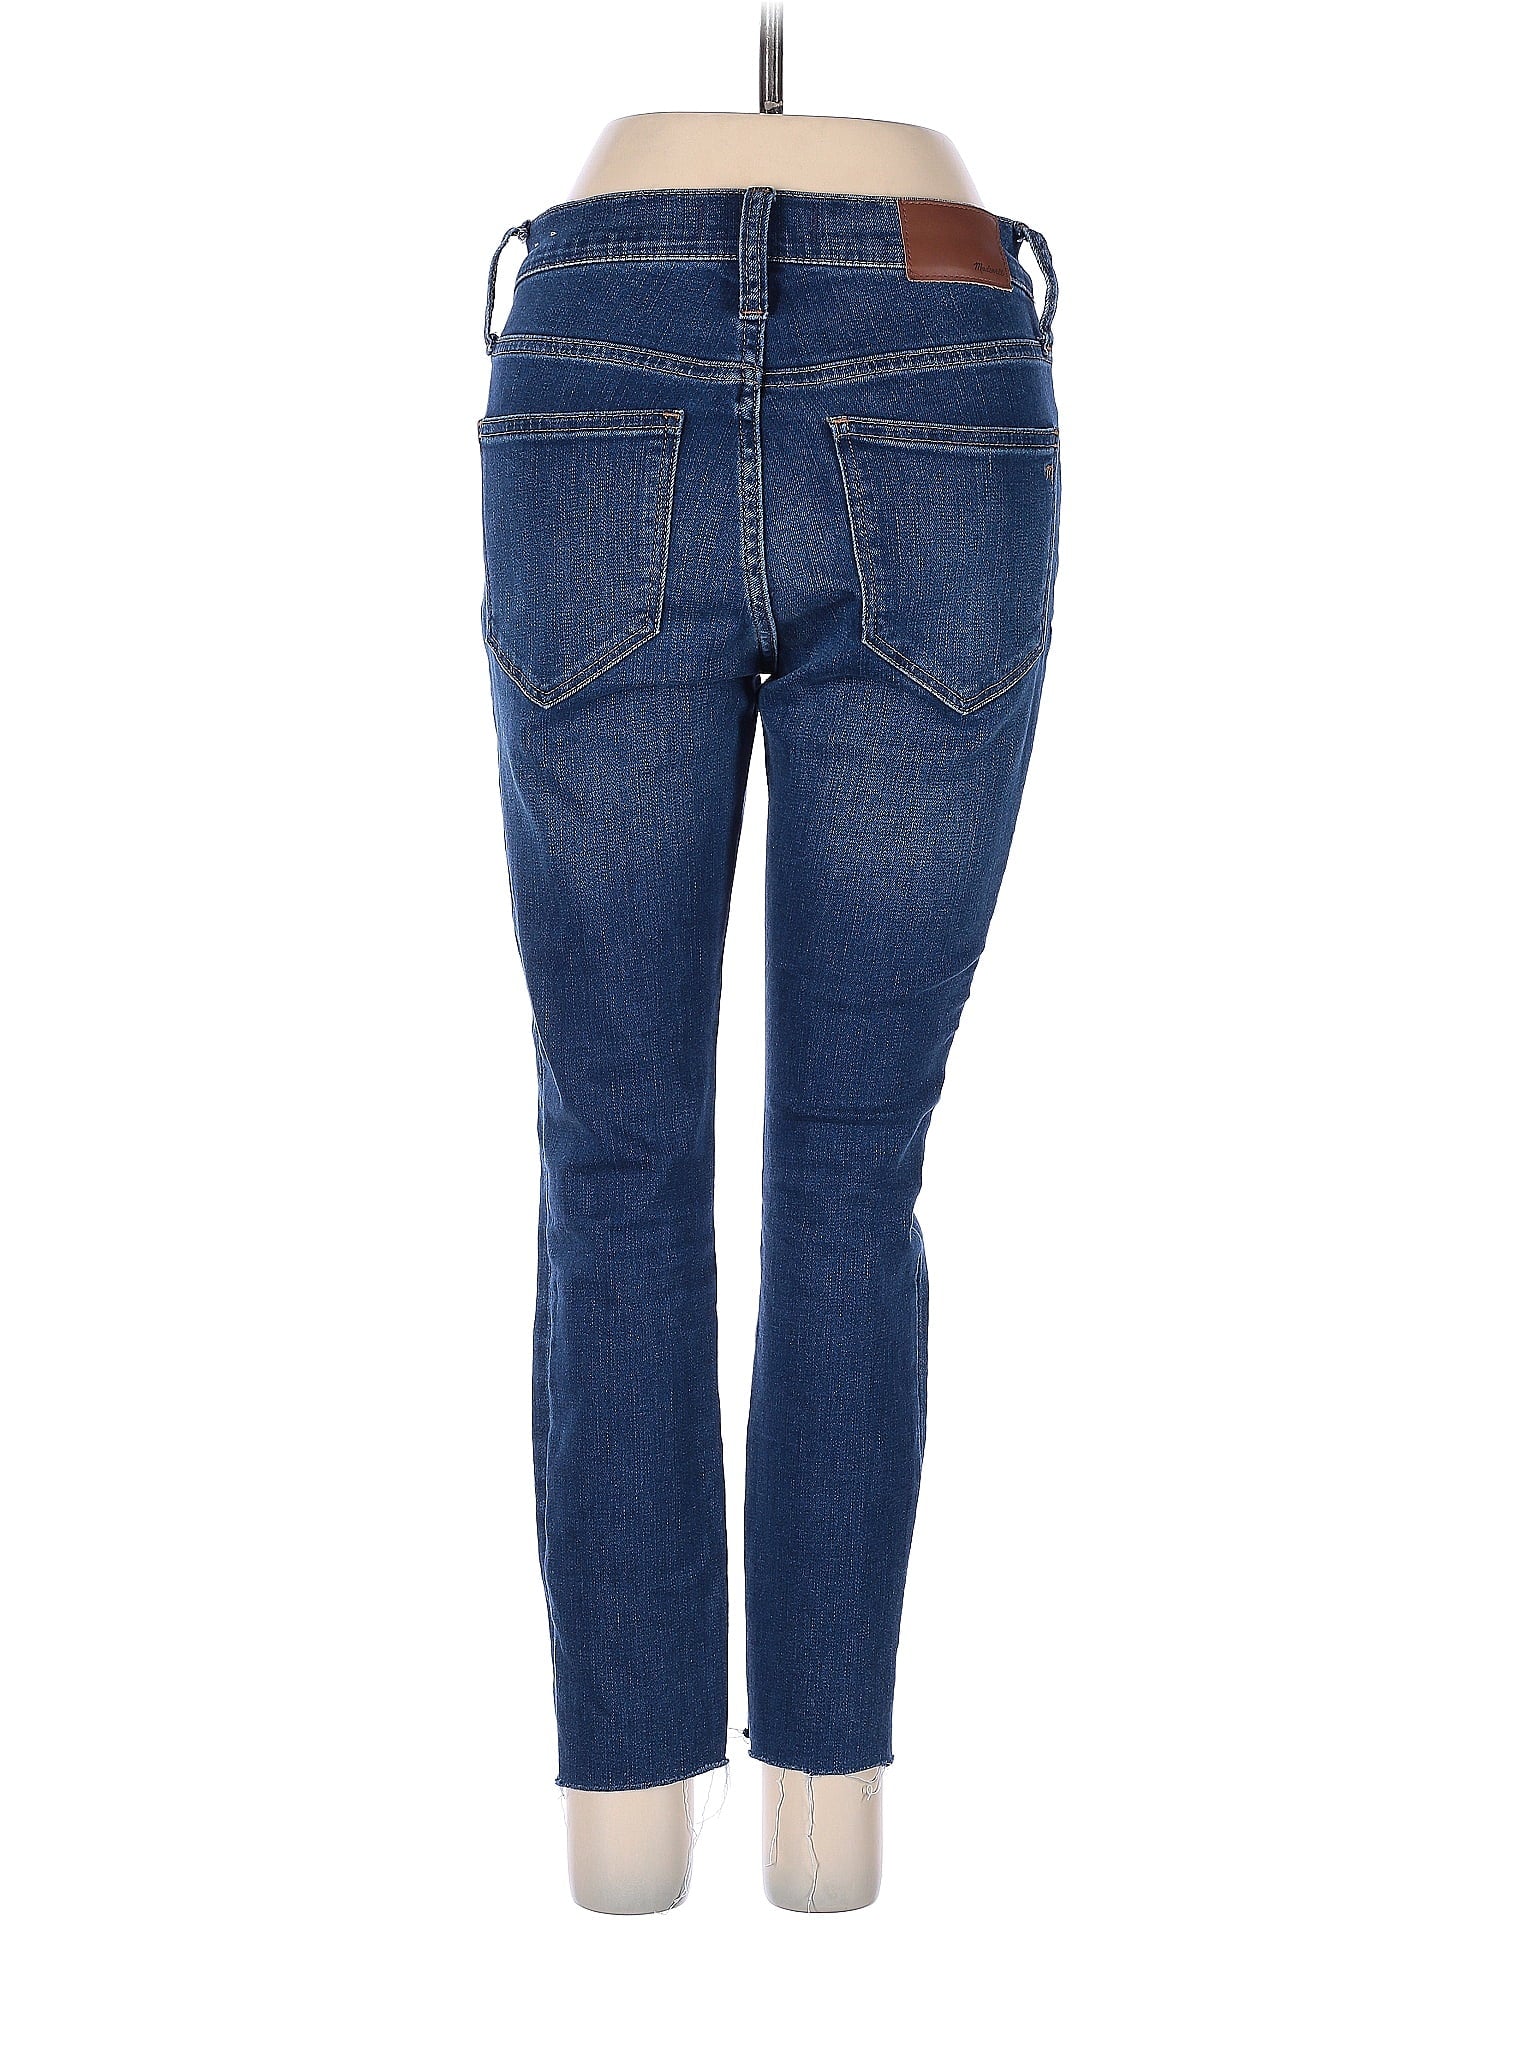 Low-Rise Boyjeans Jeans in Dark Wash waist size - 25 P